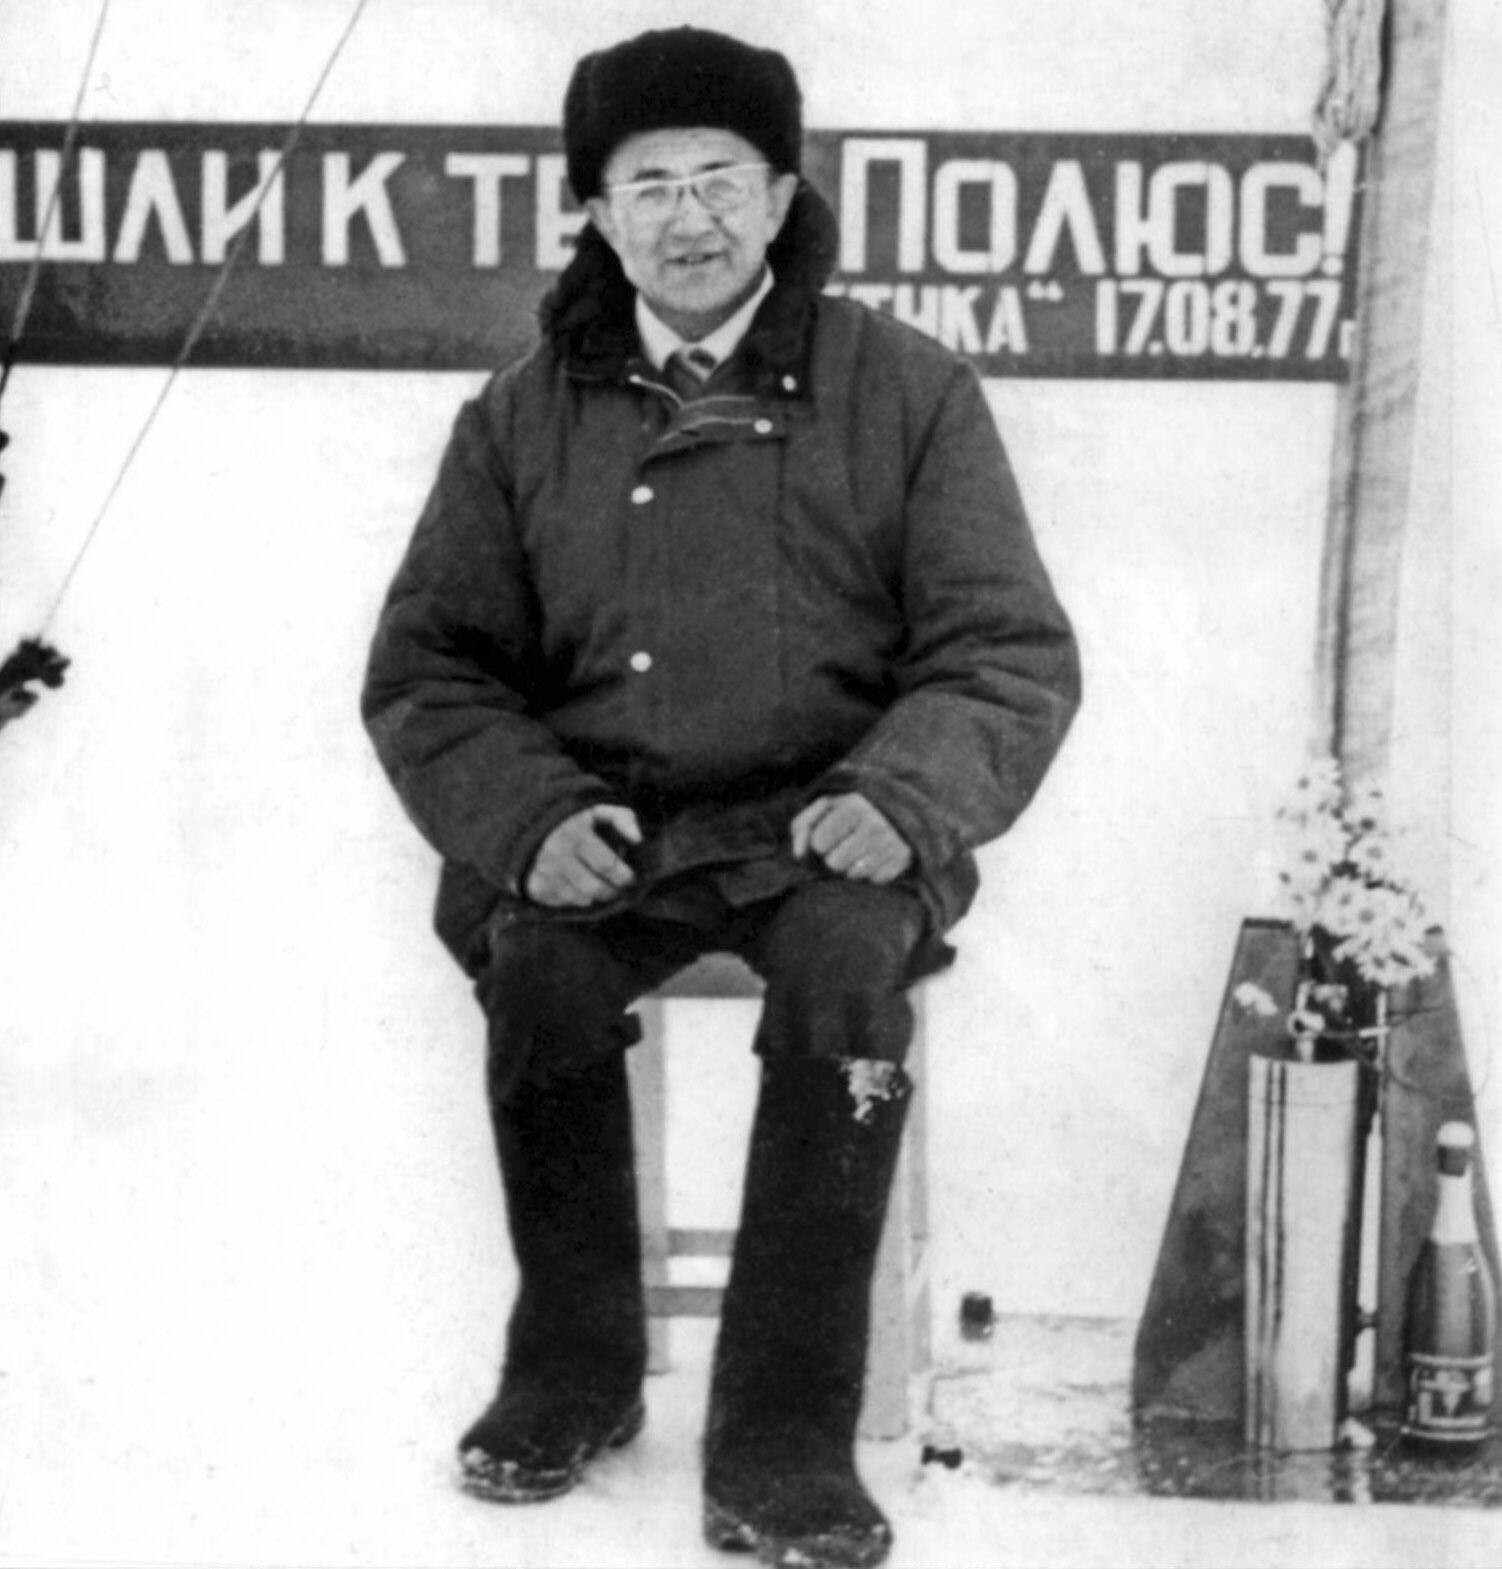 Н.С. Хлопкин на Северном Полюсе